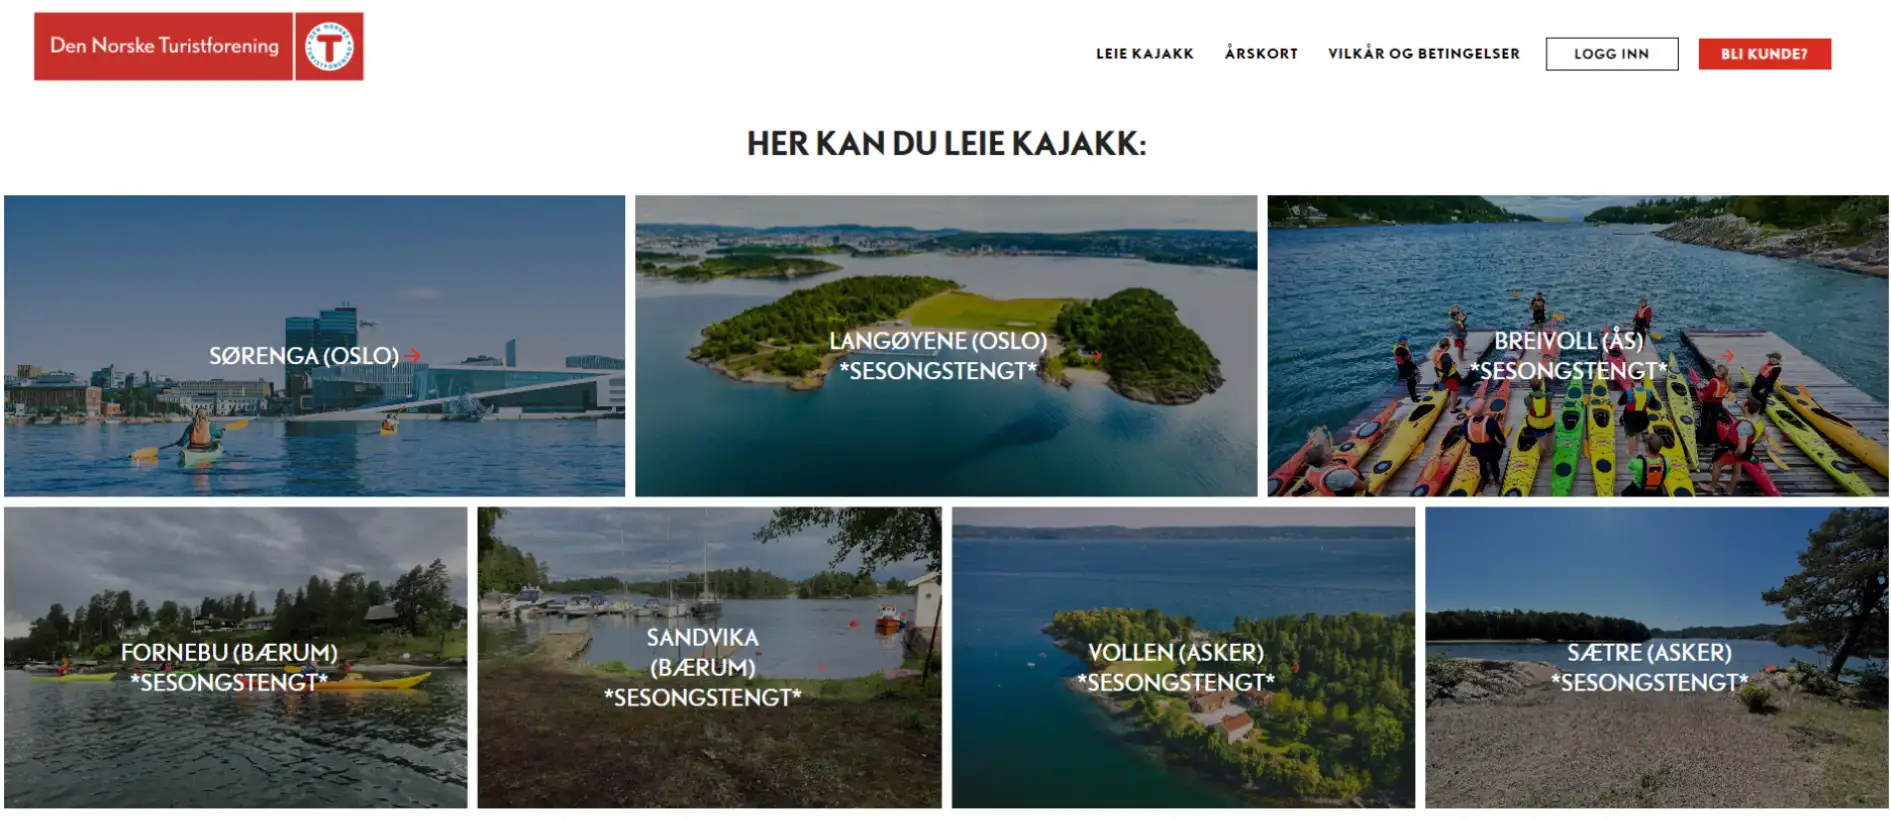 DNT kajakk - hjemmeside med booking system